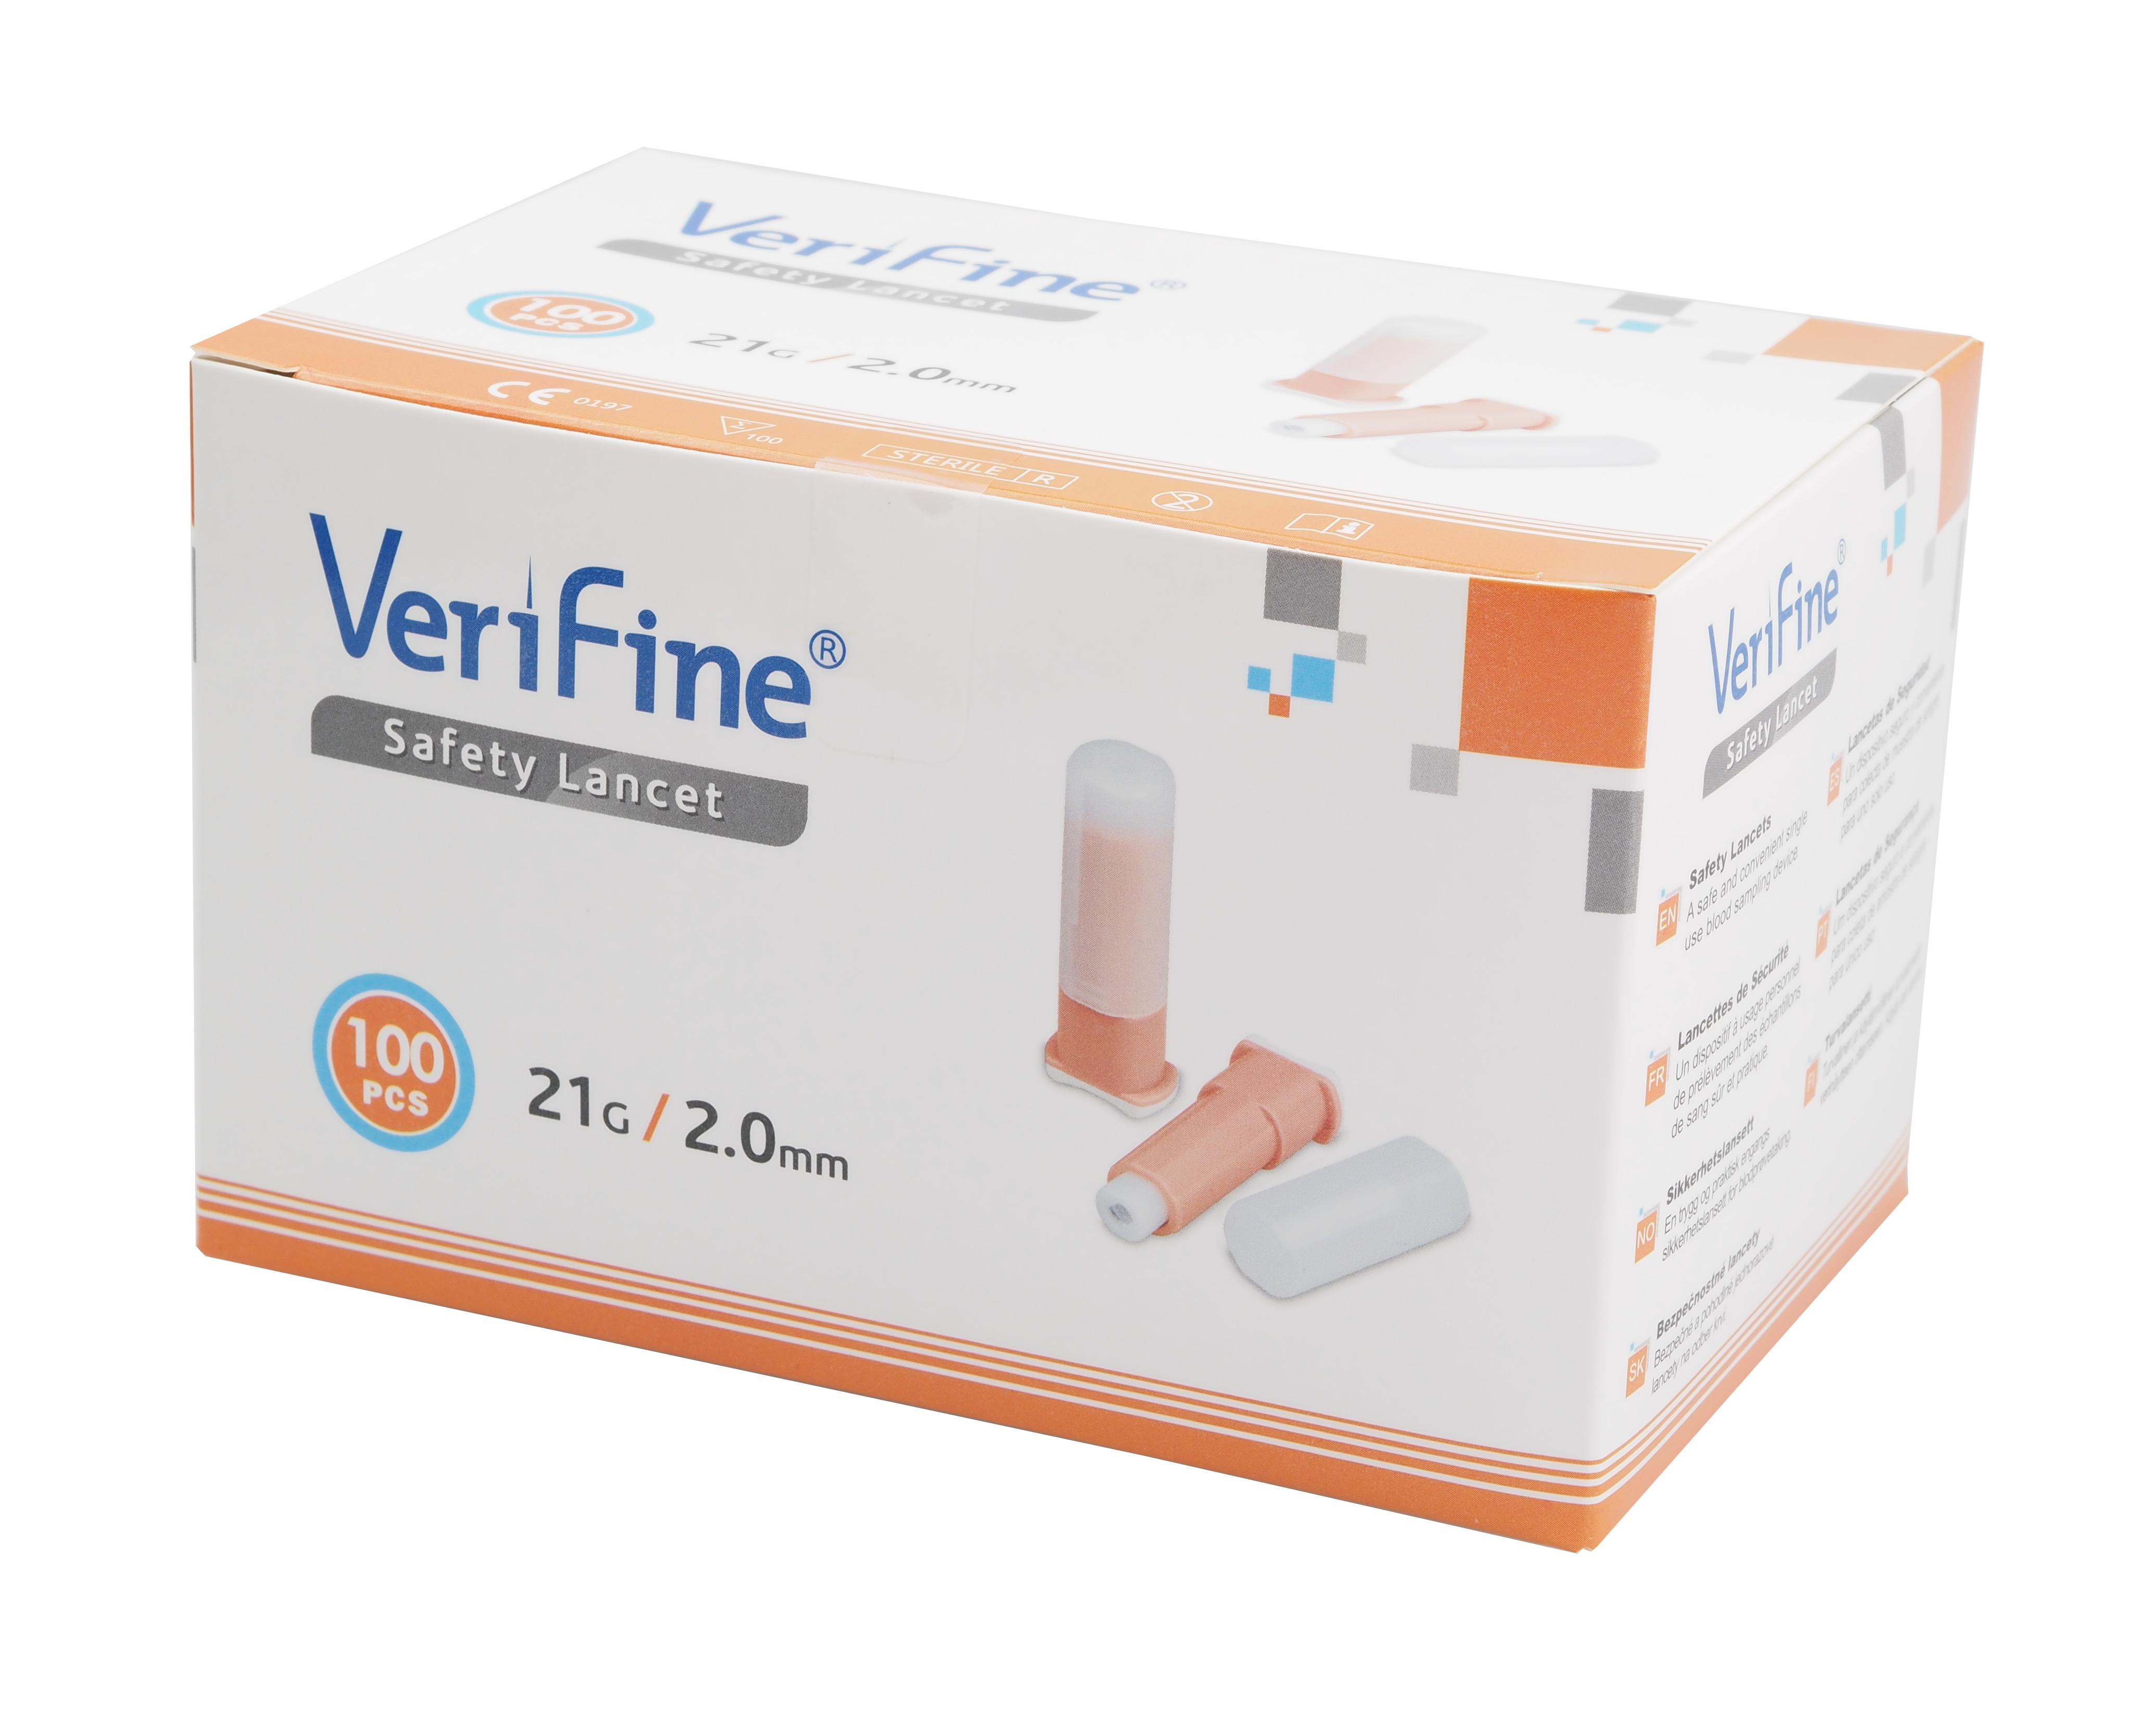 verifine-safety-lancet-21g-2mm.jpg